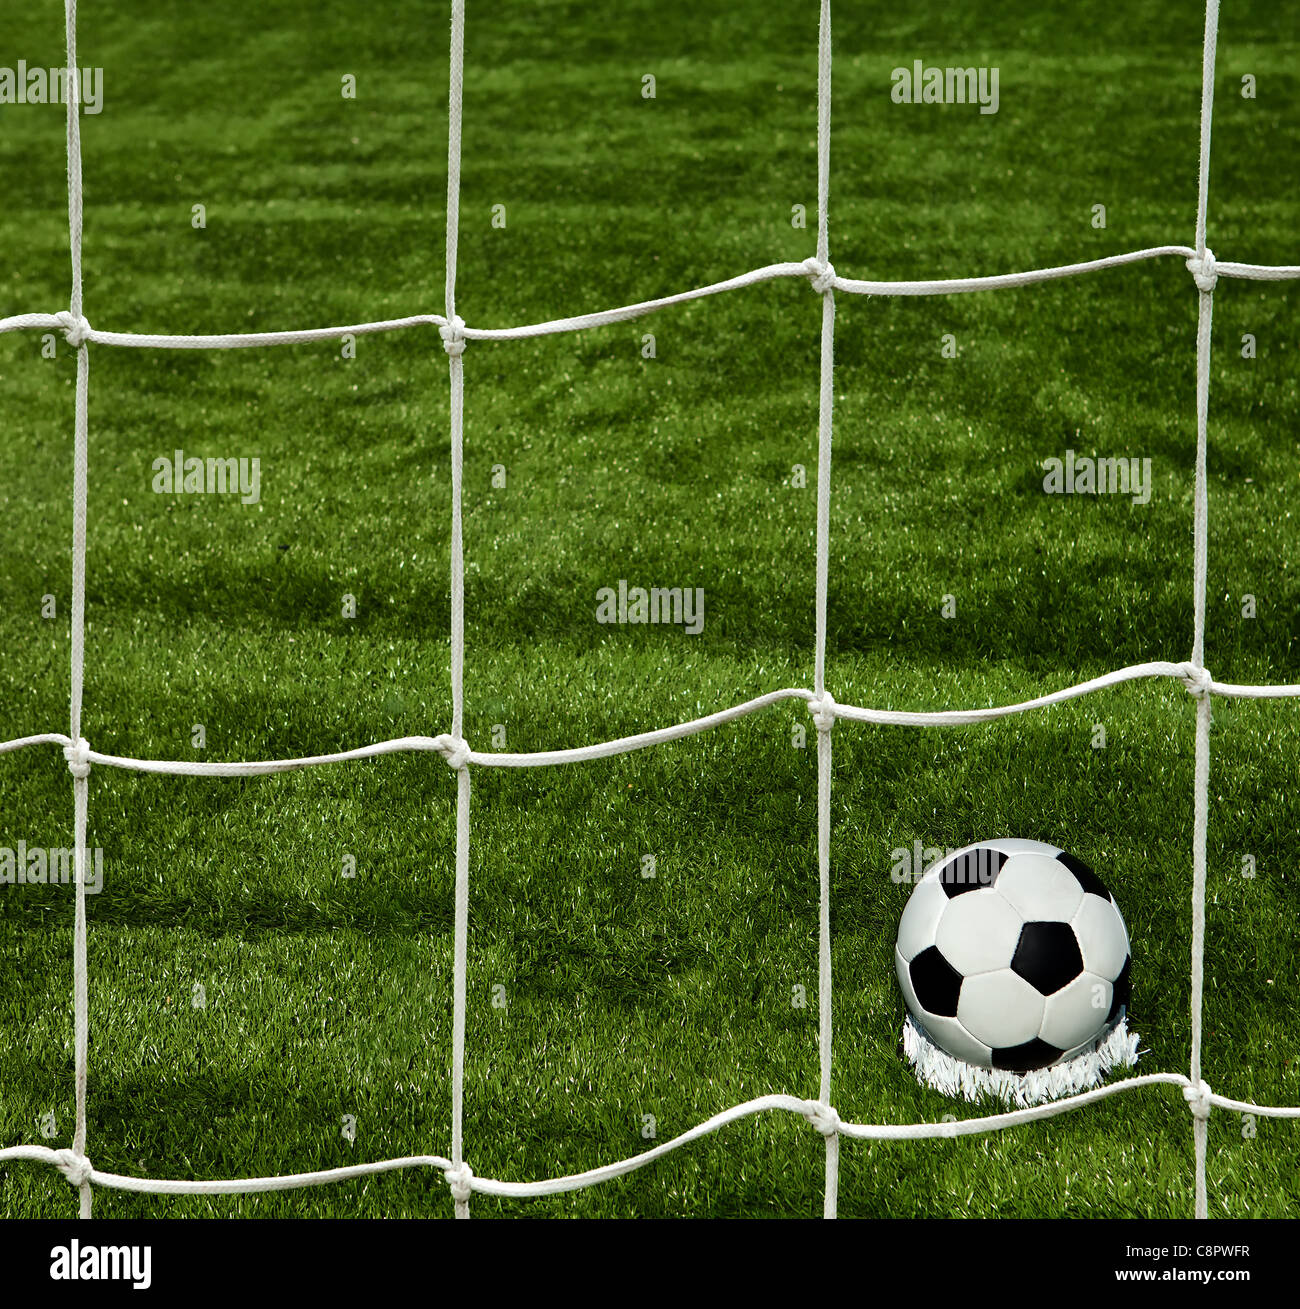 Fußball auf dem grünen Rasen Stockfoto